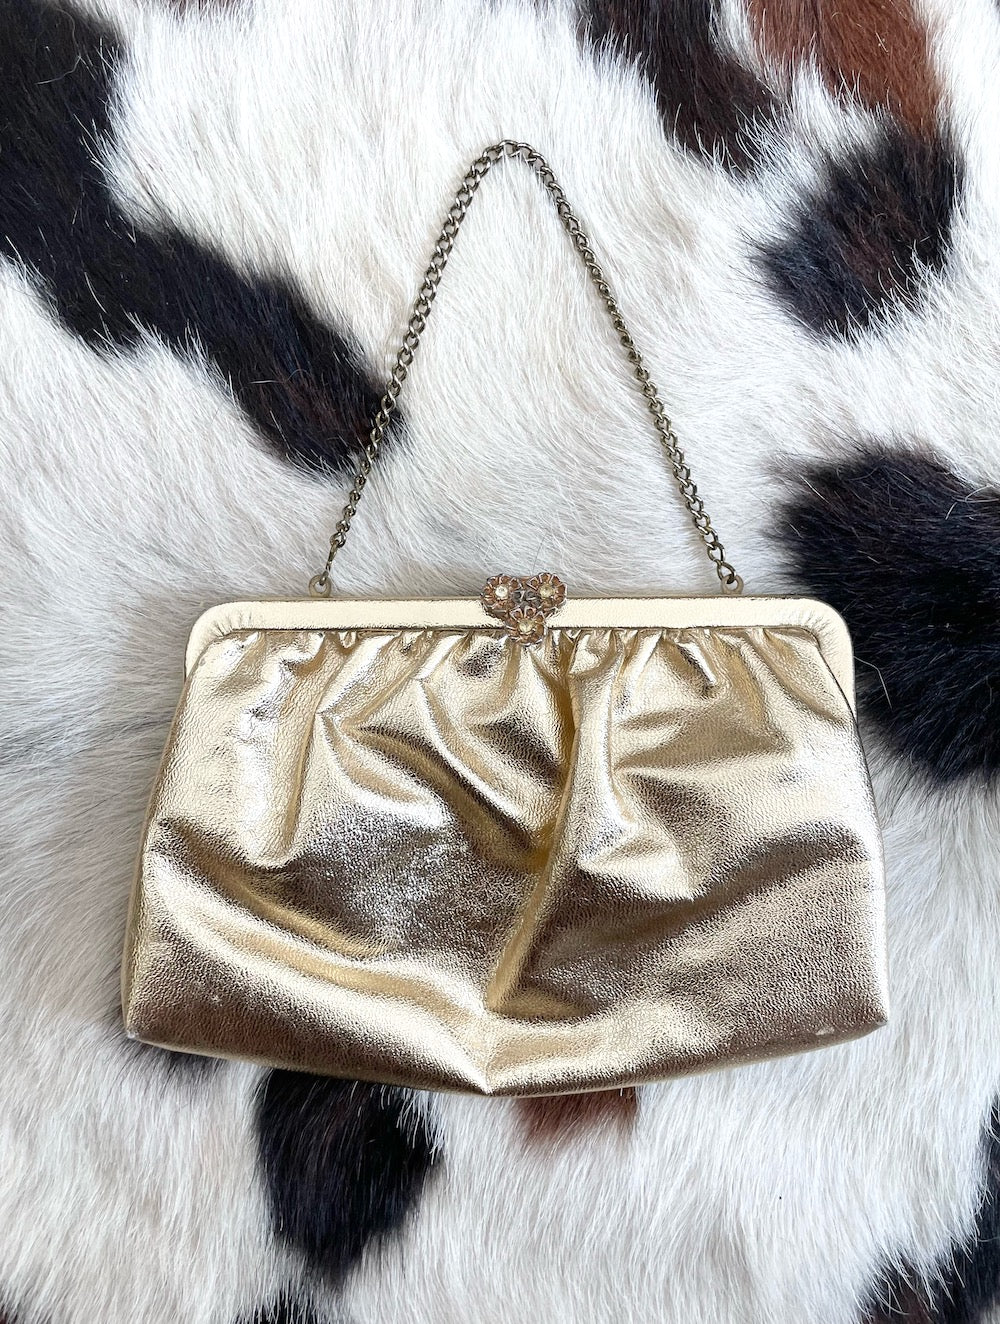 Vintage 70s Gold Floral Clasp Evening Bag